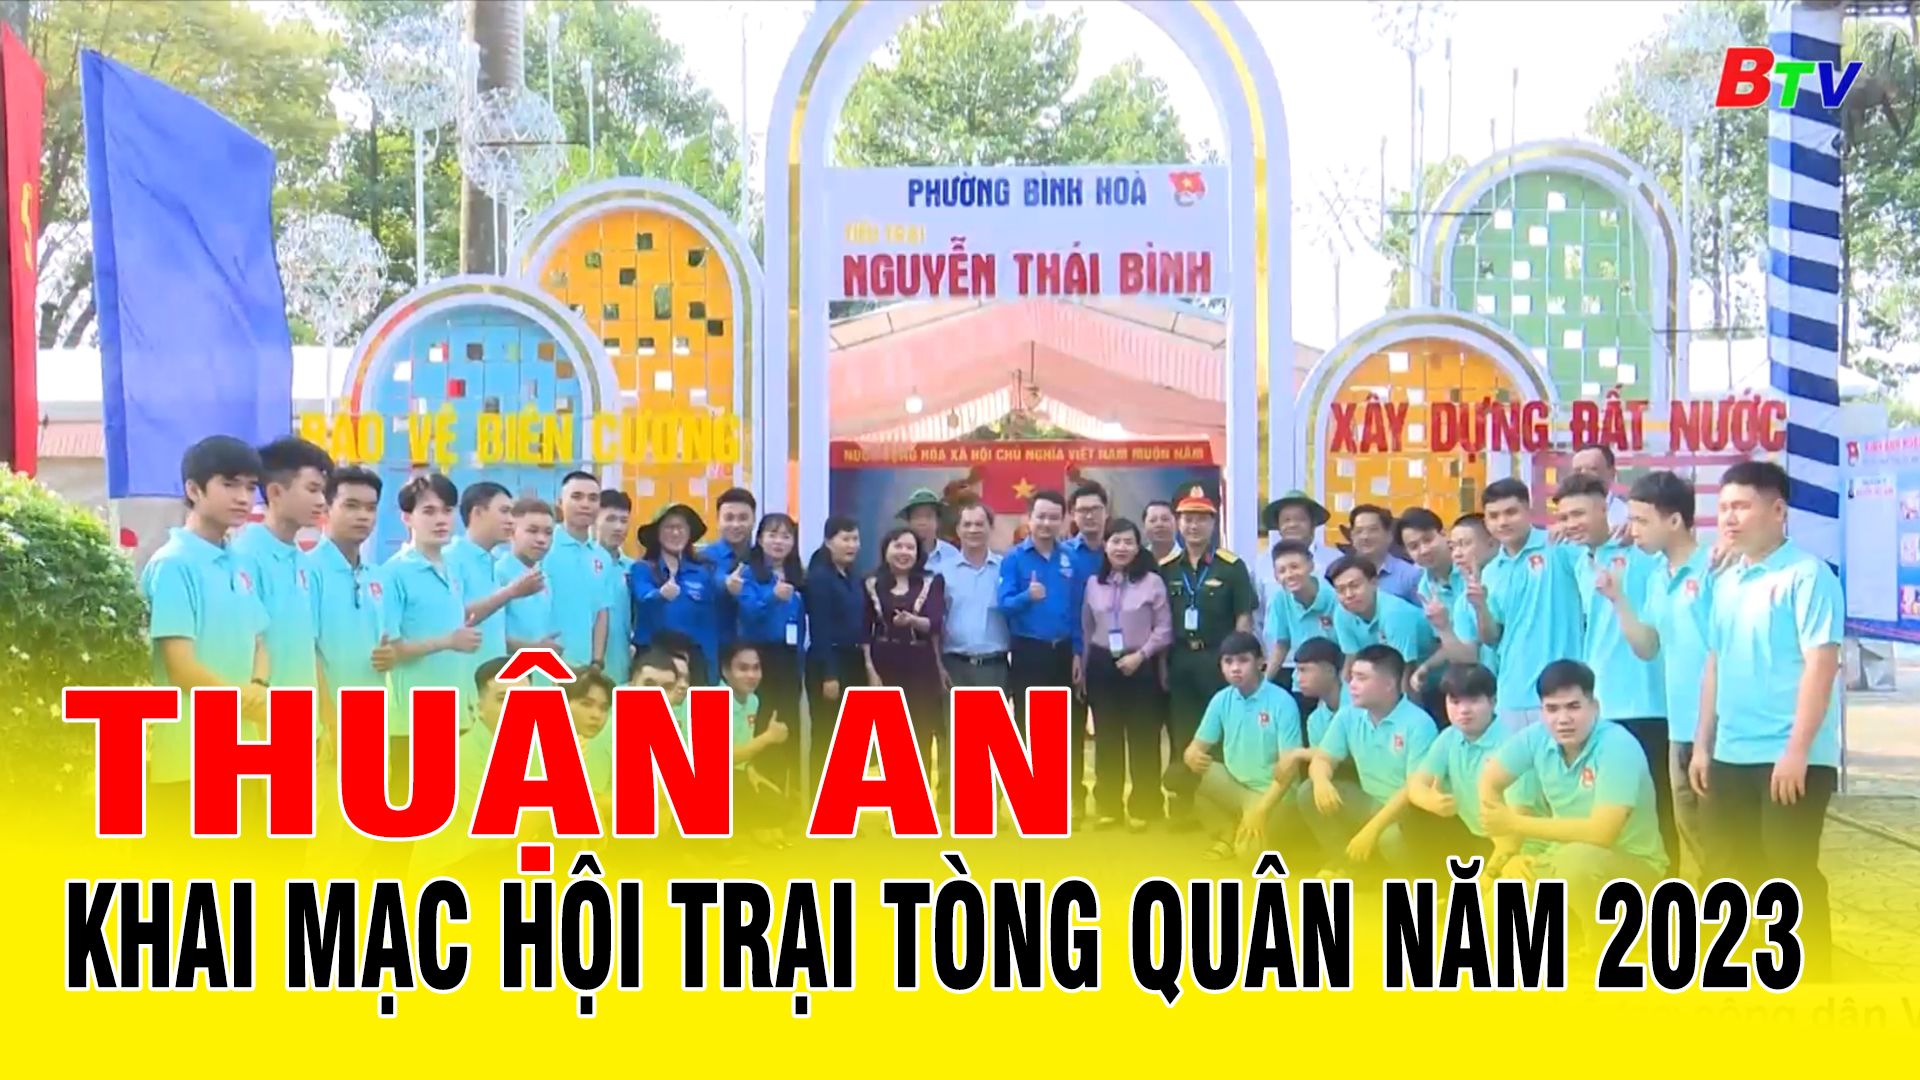 Thuận An khai mạc Hội trại tòng quân năm 2023